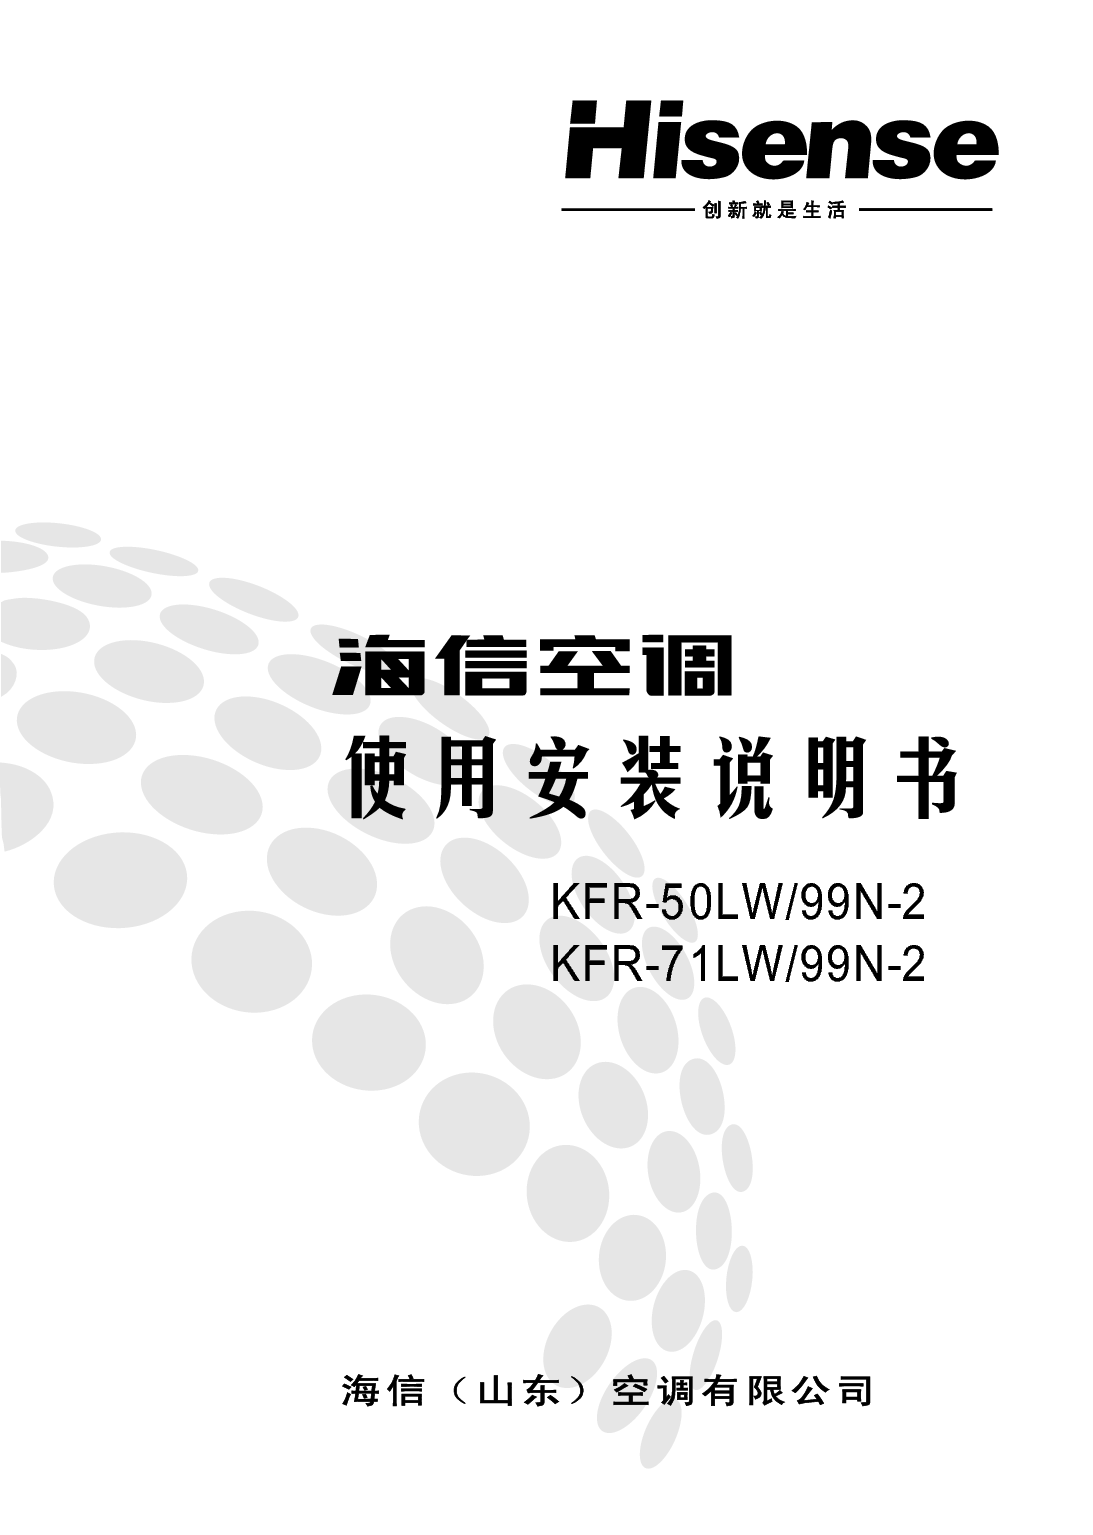 海信 Hisense KFR-50LW/99N-2 使用说明书 封面